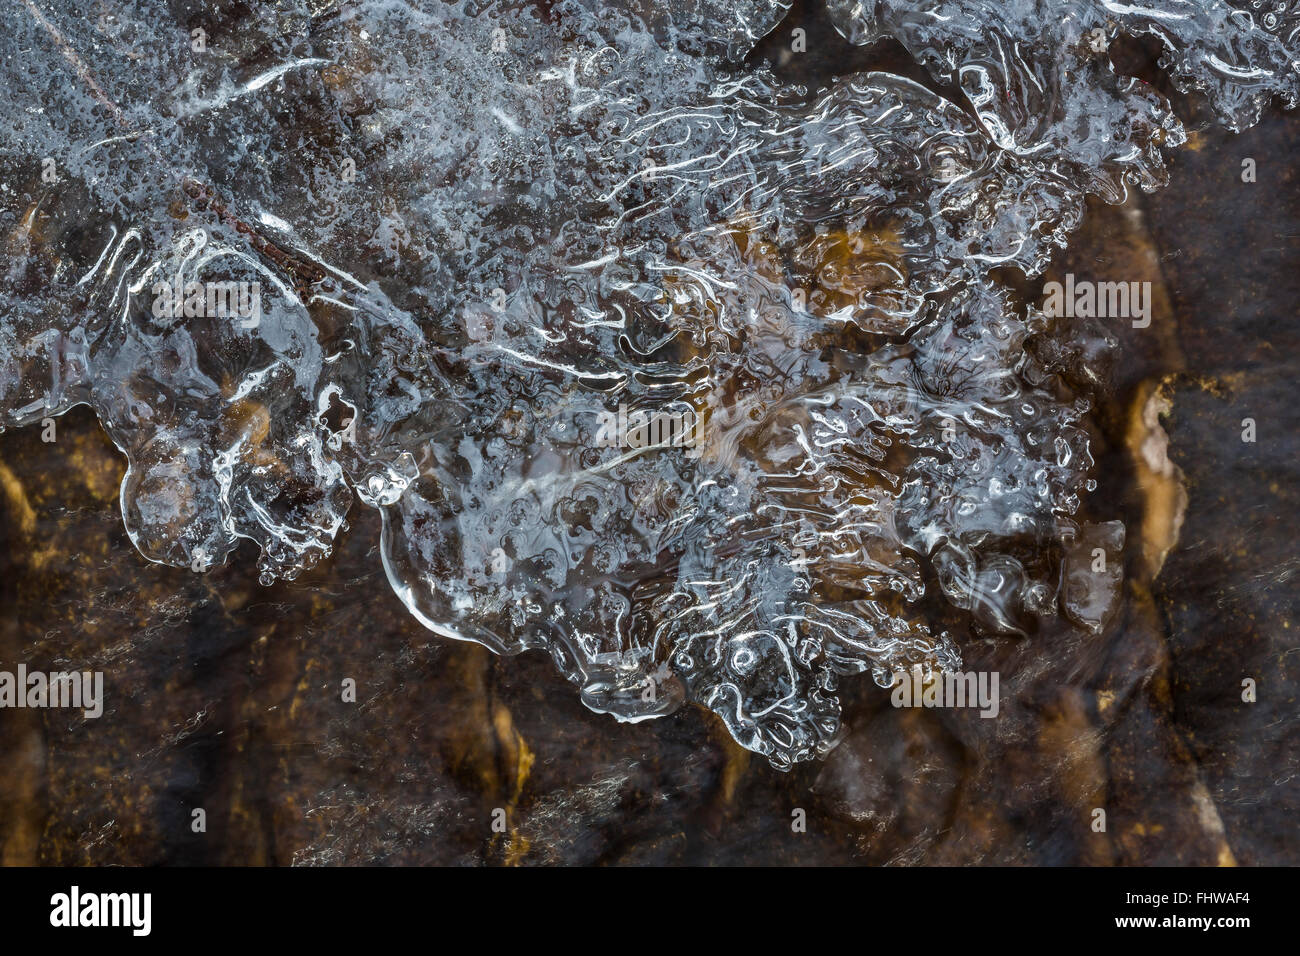 Caprichosas formaciones de hielo que crecen en el borde de un pequeño arroyo, Lago nacional Pictured Rocks, en la Península Superior, Michigan, EE.UU. Foto de stock